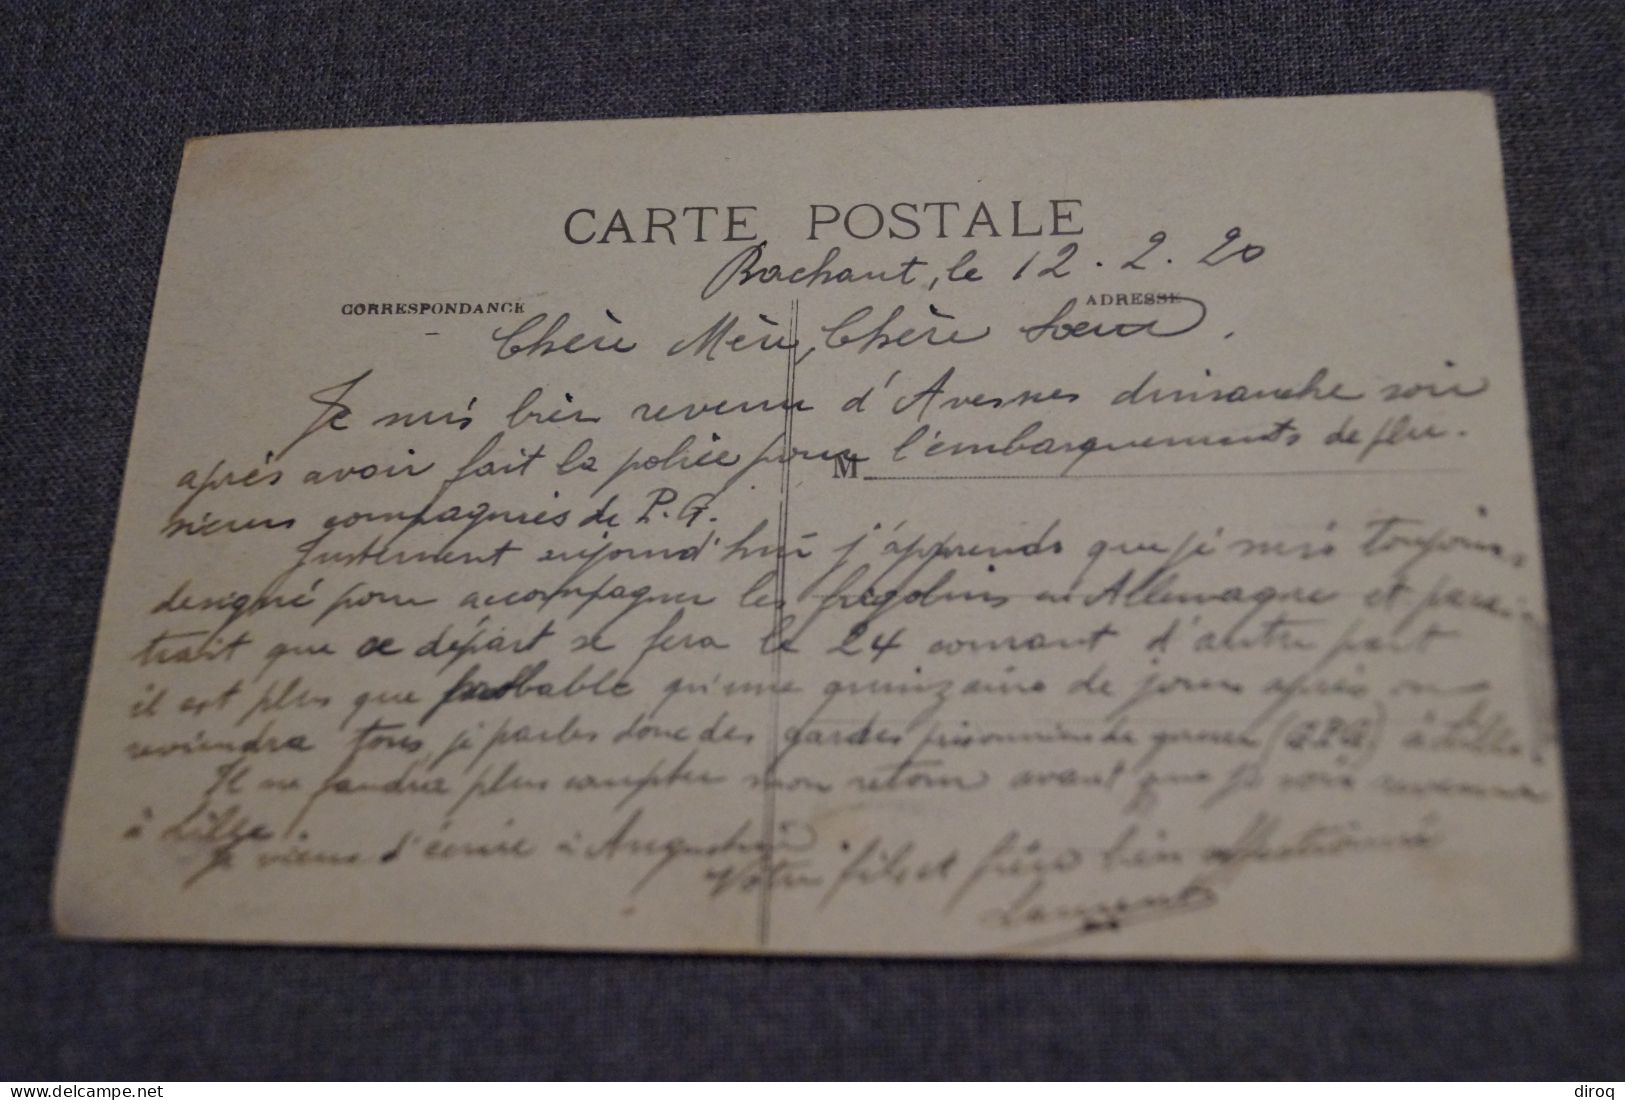 Très Belle Ancienne Carte Postale, AULNOYE, 1920,vue Intérieur De La Gare - Aulnoye